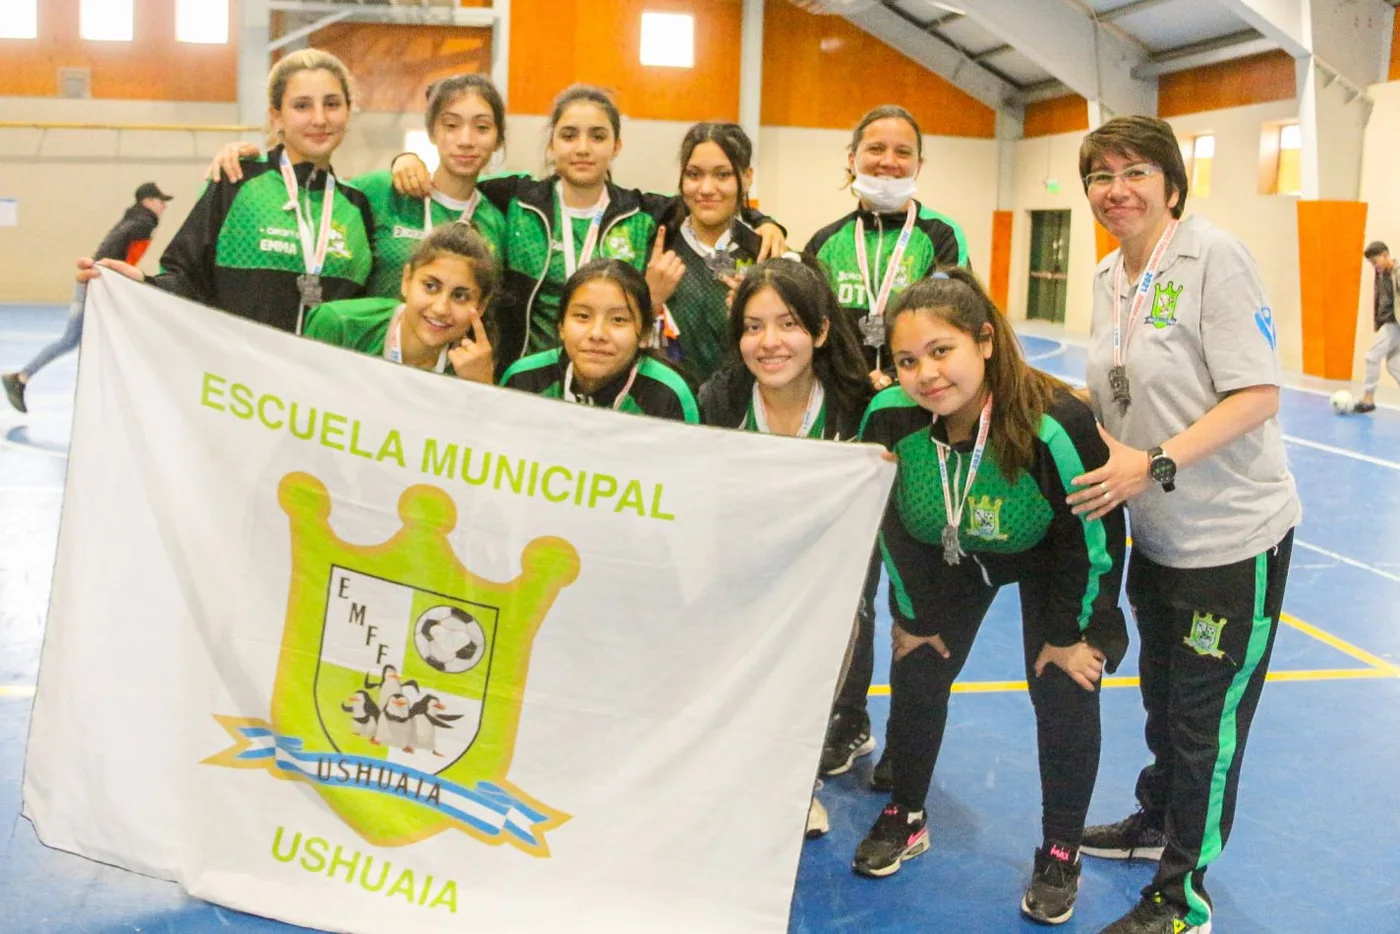 Escuela Municipal de Ushuaia, derrotó 2 a 1 en la final al equipo de Escuela Argentina de Río Grande.